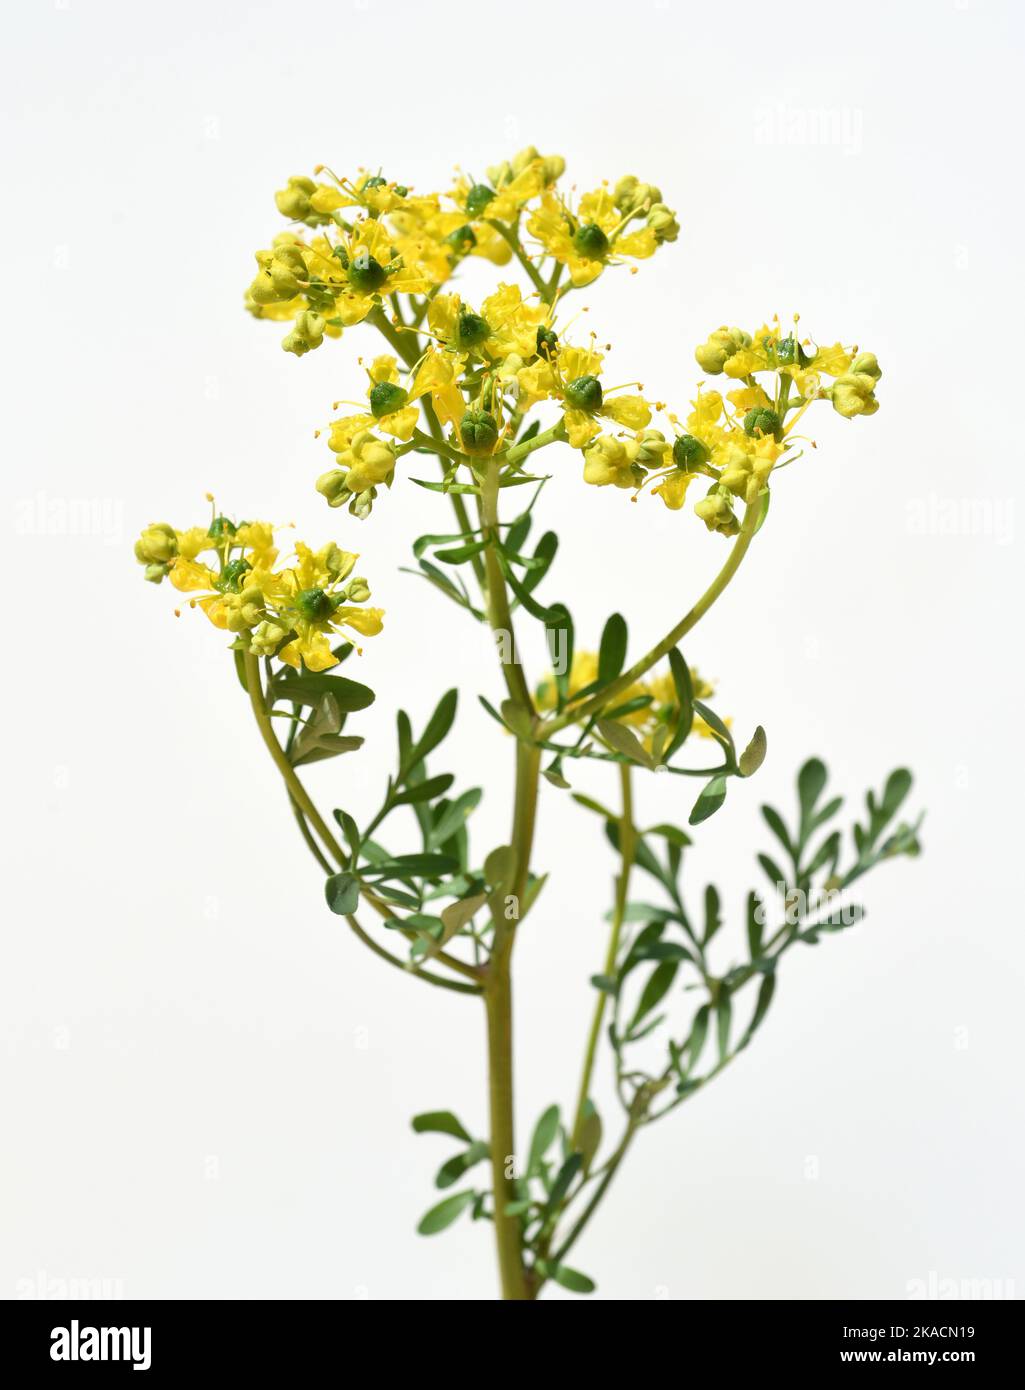 Weinraute, Ruta graveolens, ist eine wichtige Heilpflanze mit gelbgruenen Blueten. Sie ist eine  Staude und wird auch in der Kueche als Gewuerz und in Stock Photo